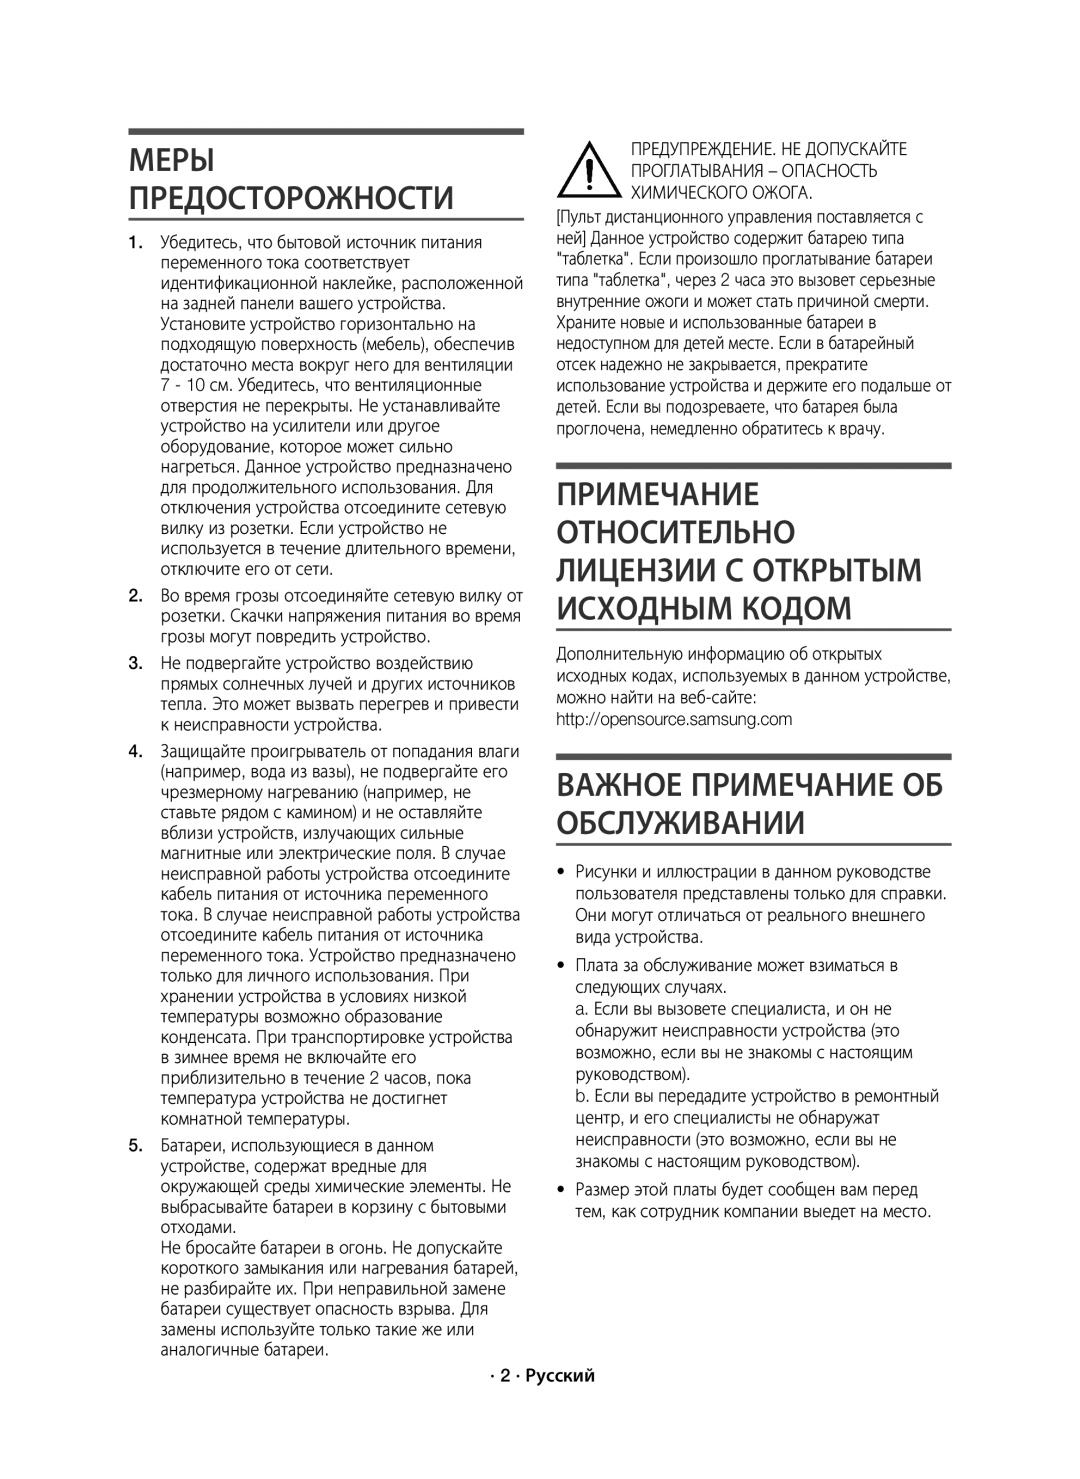 Samsung HW-J7500/RU manual Важное Примечание ОБ Обслуживании, · 2 · Русский 